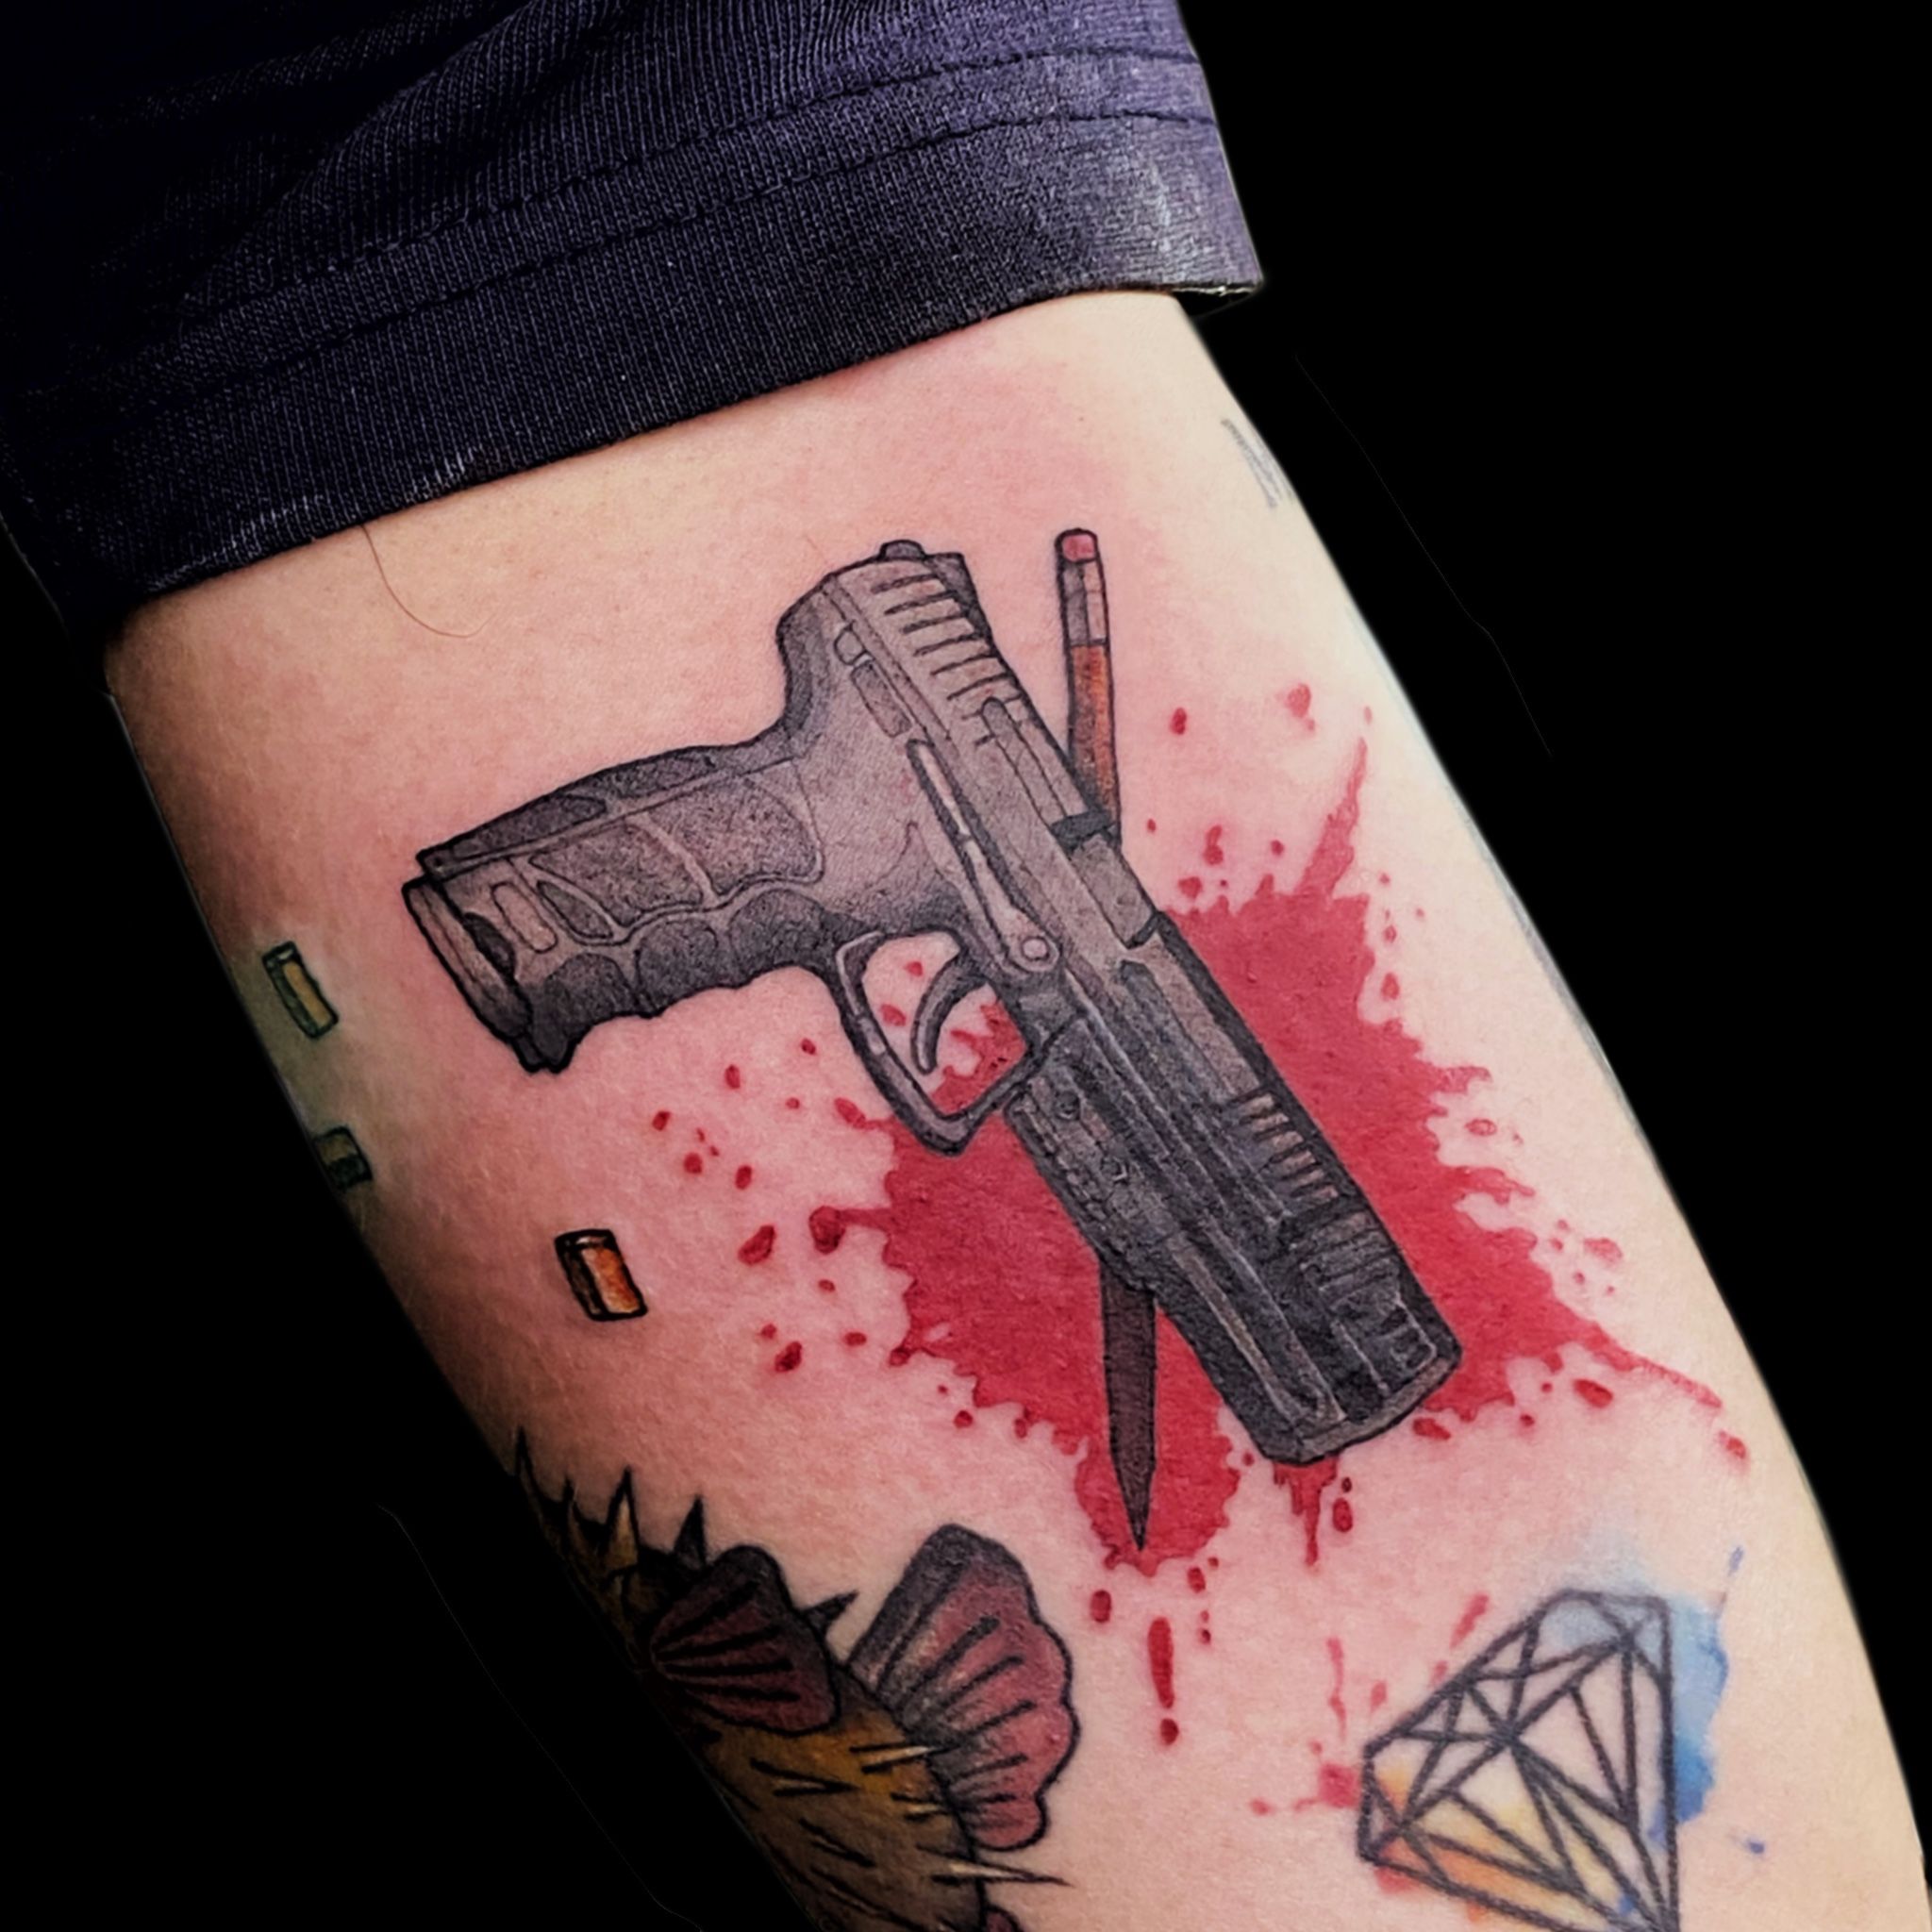 TATTOO ME on Tumblr: Guns 😝 shoot me now #johanespinoza #tattoome21.es  #tattoome #fuengirola #tattoomalaga #tattoofuengirola #tattoo #tattoos...